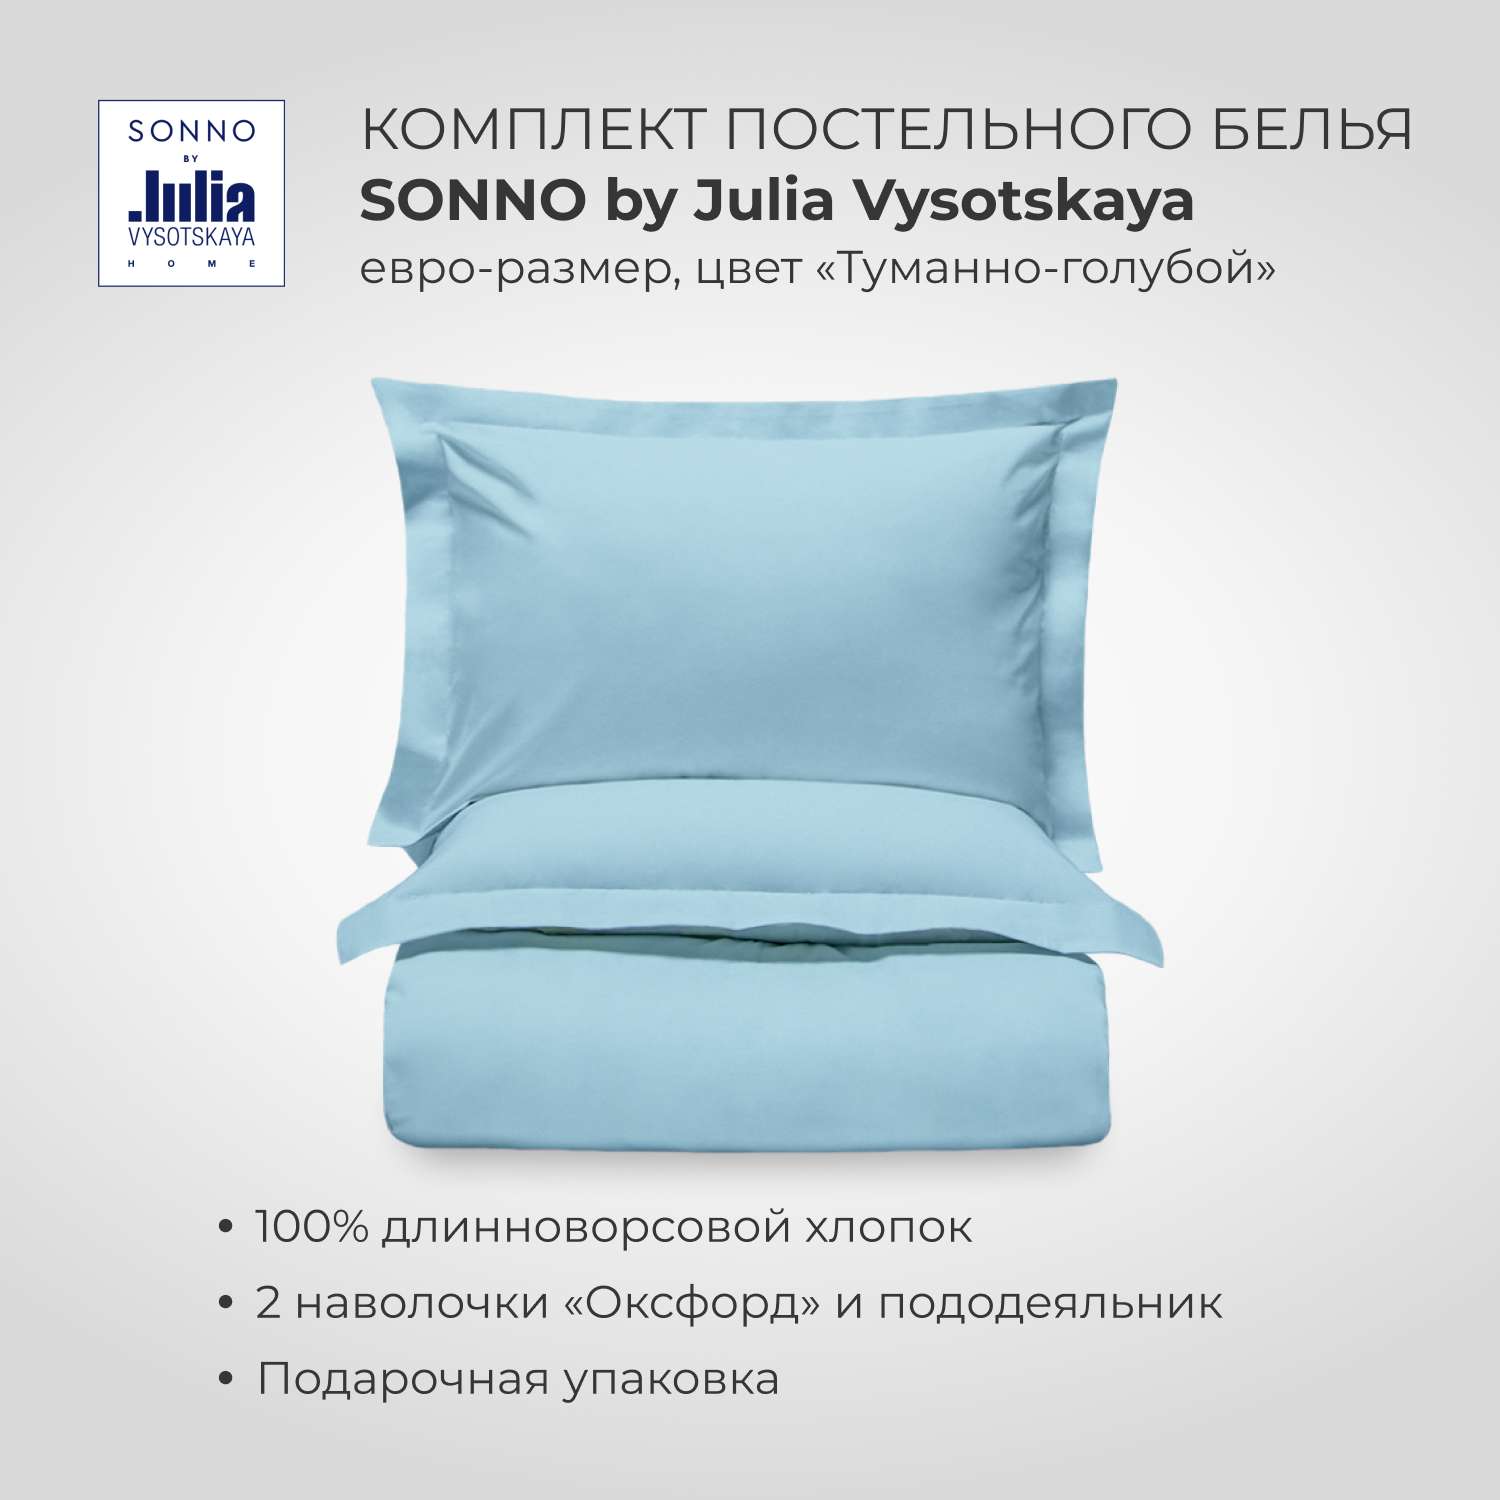 Комплект постельного белья SONNO by Julia Vysotskaya Евро-размер цвет Туманно-голубой - фото 1